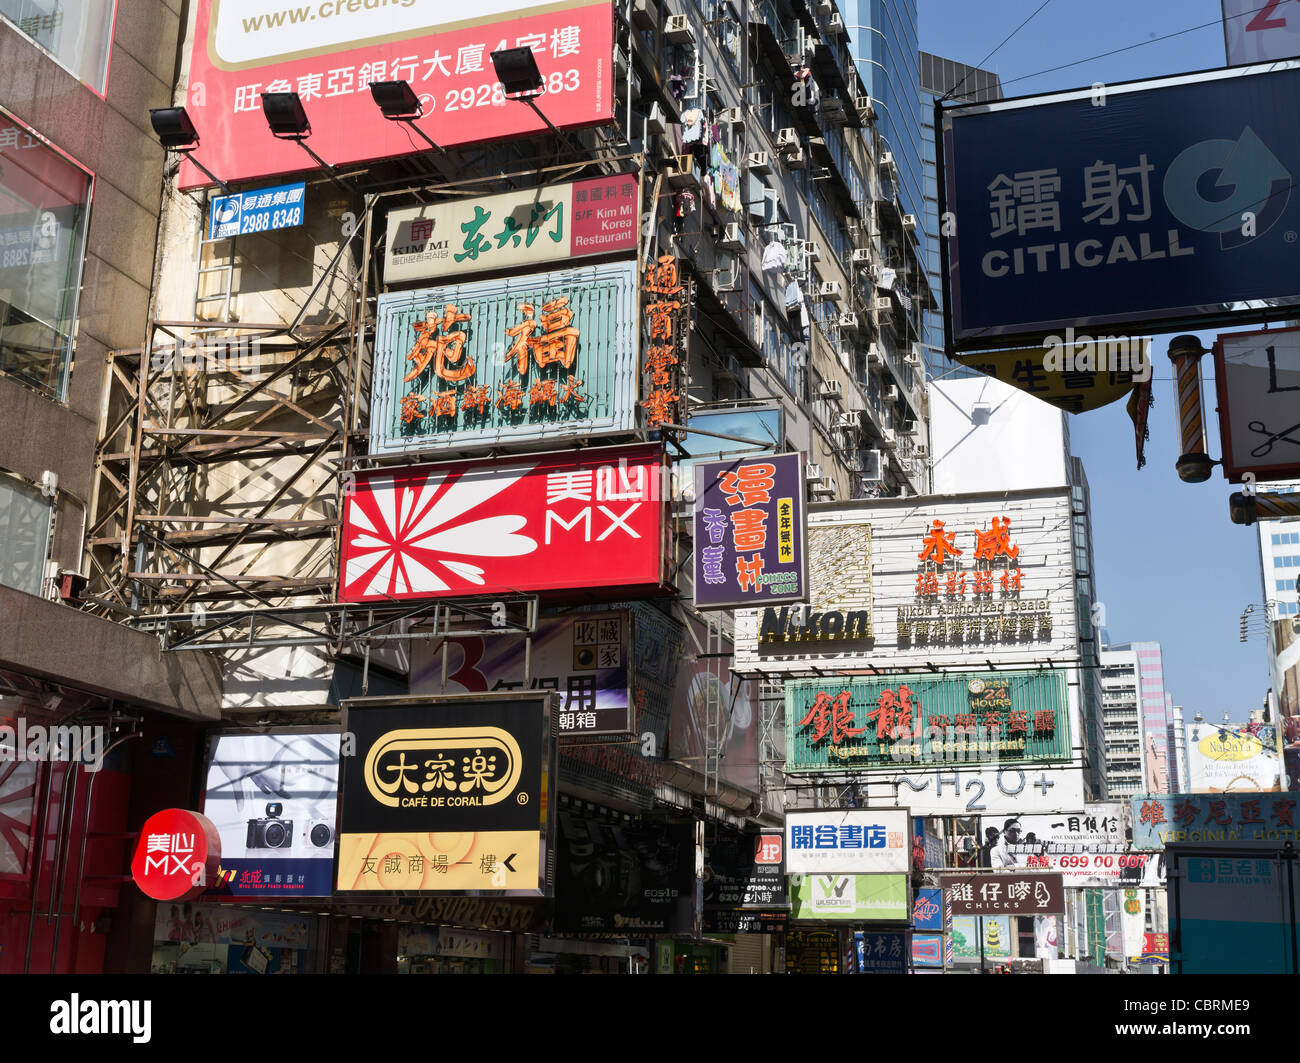 dh tabelloni pubblicitari cinesi calligrafia MONG KOK HONG KONG Mongkok annunci pubblicitari di strada cartelli pubblicitari affissioni annuncio pubblicitario Foto Stock